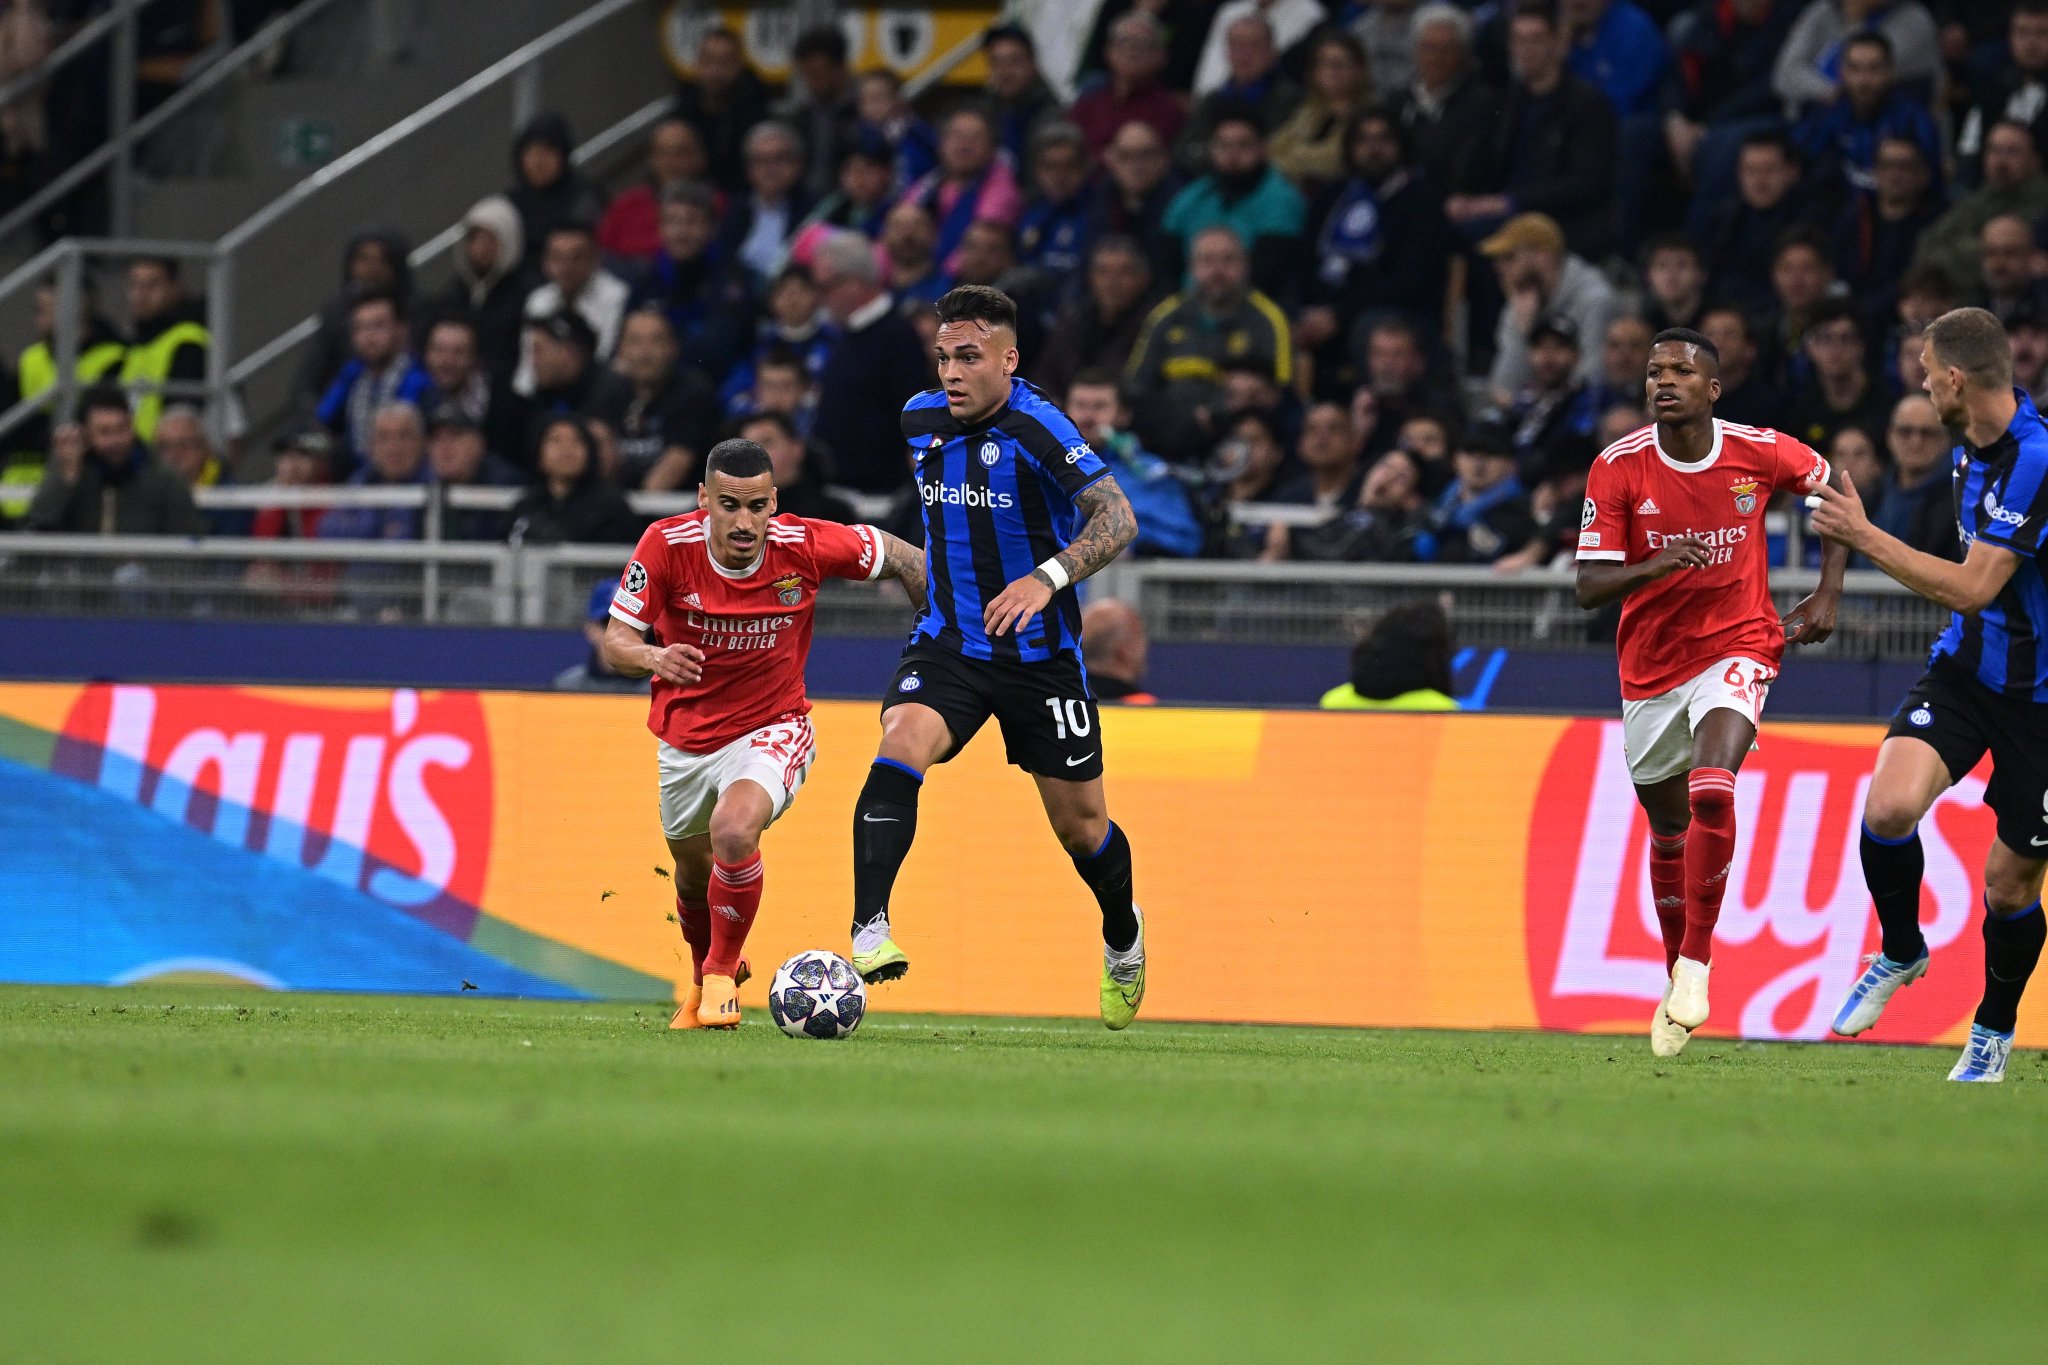 Lautaro Martínez anotó uno de los goles del Inter, que regresó a las semifinales de la Champions League. Foto: Inter